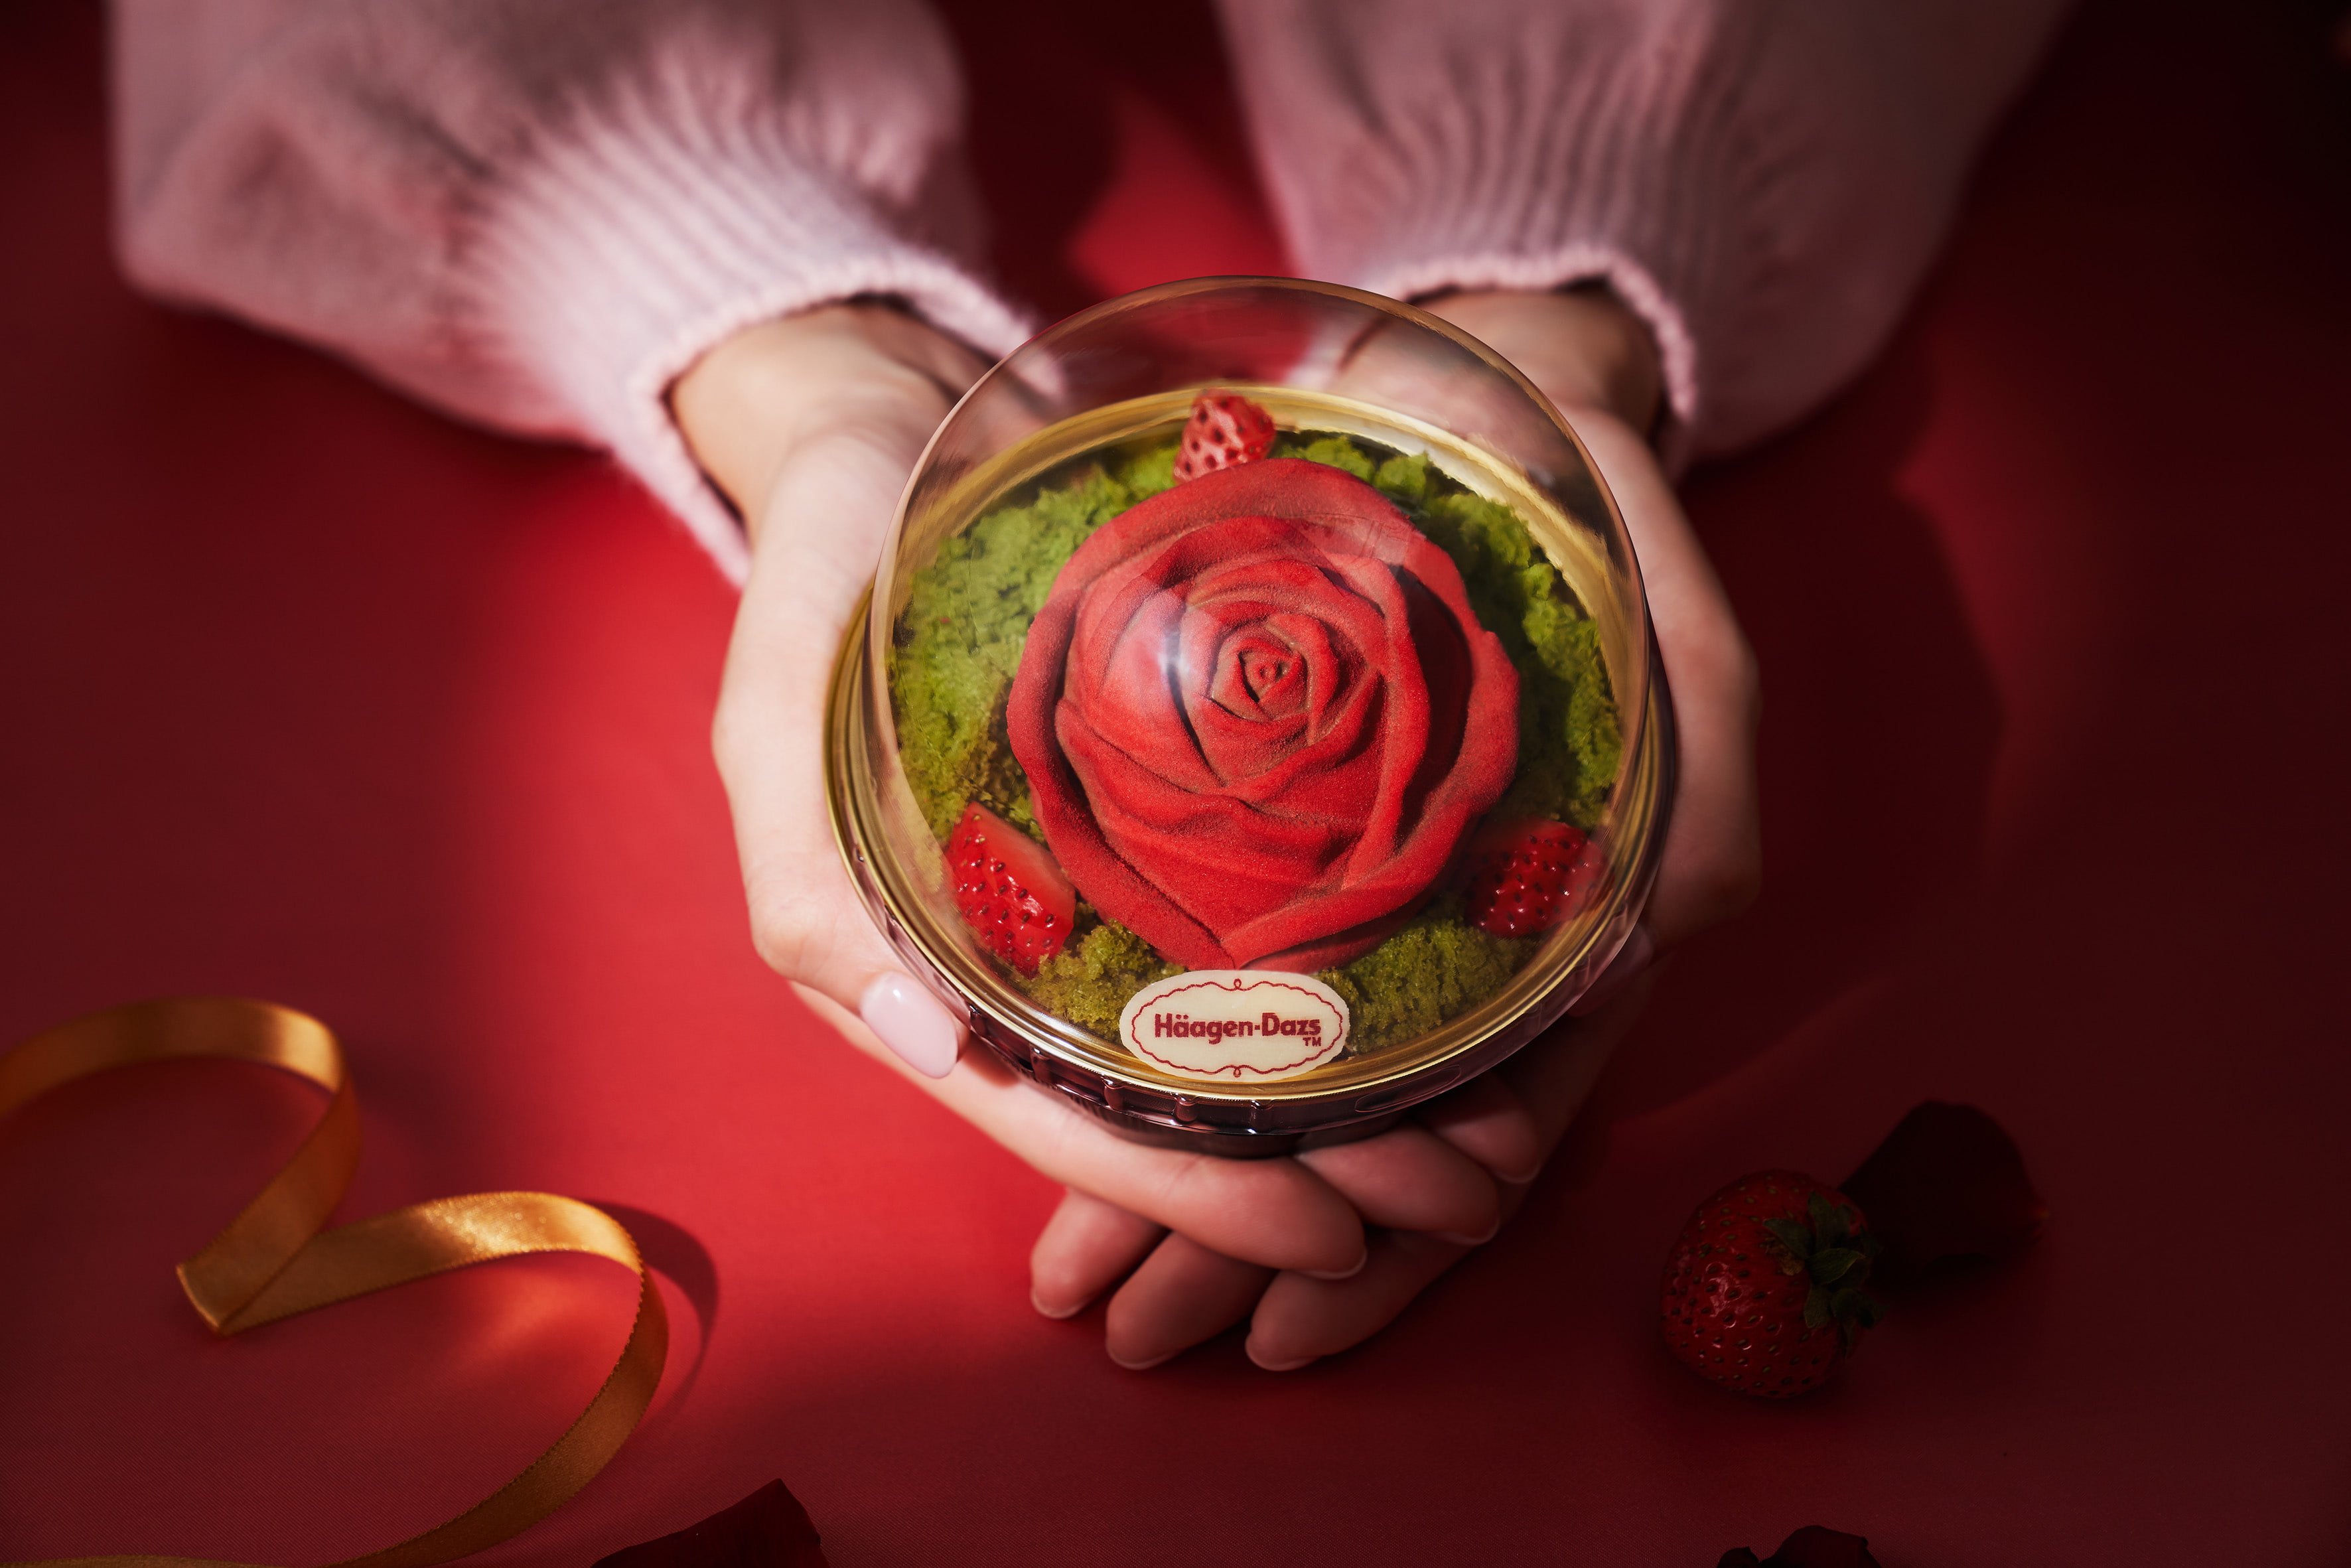 自帶浪漫氣場 冬日傳情首選 哈根達斯「掌心玫瑰」絕美登場